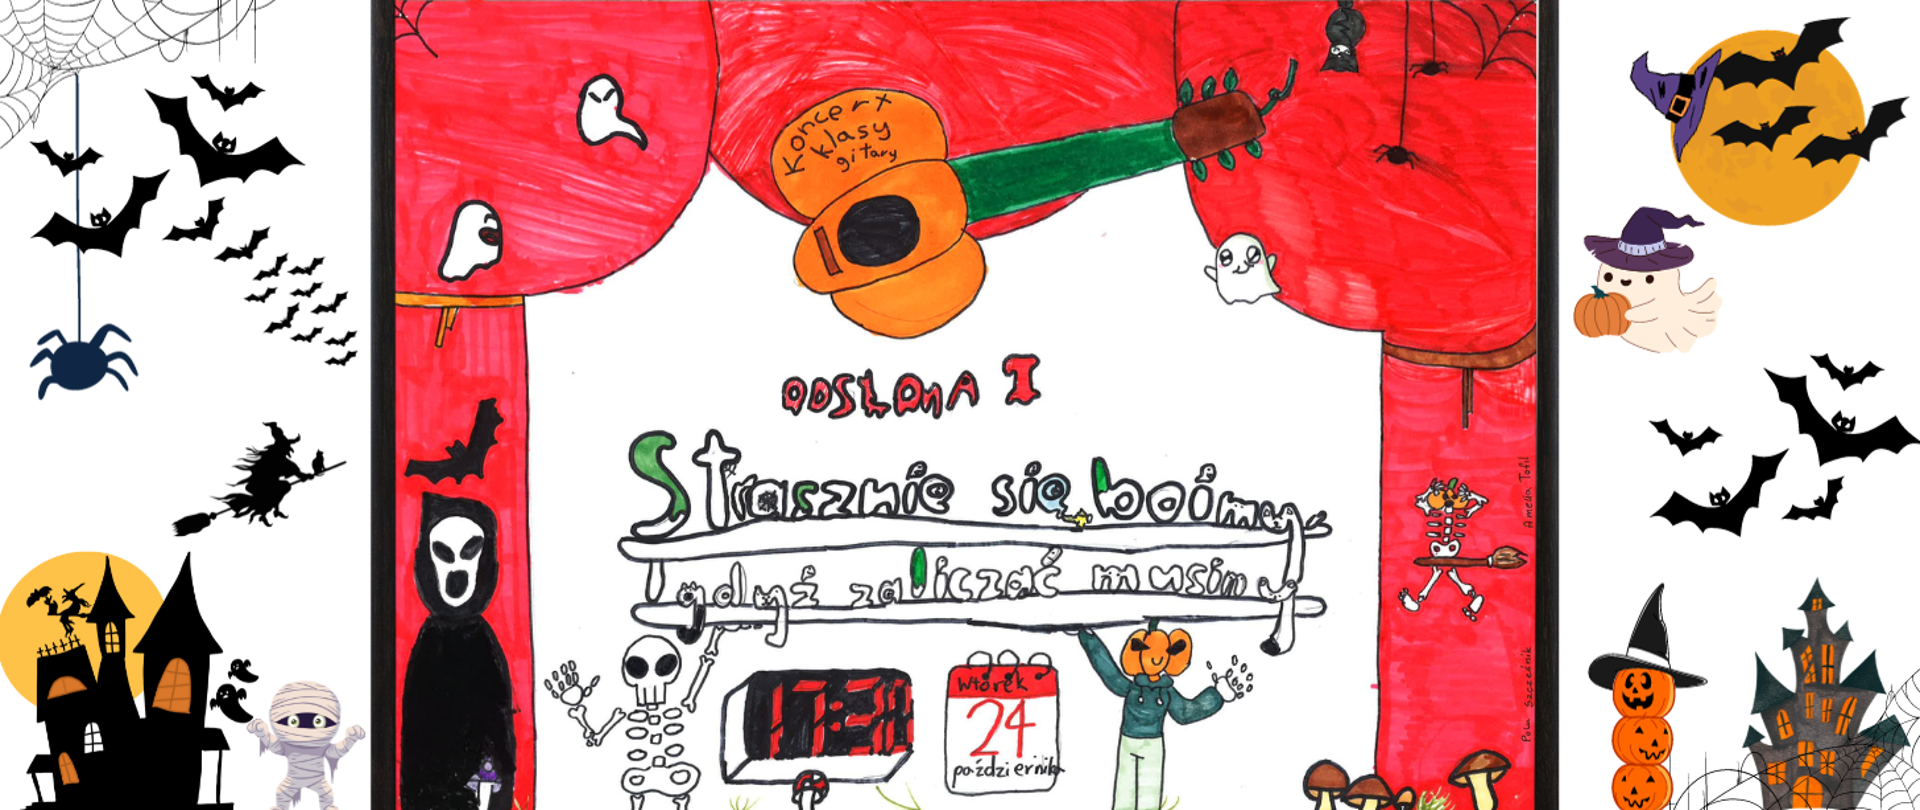 Plakat koncertu stworzyły odręcznie technikami analogowymi dwie uczennice klasy gitary prowadzonej przez Dariusza Wróbla: Amelia Tofil i Pola Szcześnik. W centralnej części widocznego na stronie internetowej szkoły plakatu przetworzonego elektronicznie jest skan plakatu wykonanego odręcznie przez uczennice flamastrami oraz kredkami. Kolory użyte to przeważnie czerwień, czerń, pomarańcz jak również w mniejszej ilości zieleń, niebieski oraz brąz. Grafiki zostały zaczerpnięte z wyobraźni uczennic i nie są ogólnie dostępne w zasobach internetowych. Są to: duszki, kościotrup, śmierć, grzyby leśne, miotła, gitaro-dynia, nietoperze, pająki, pajęczyna. Tekst widoczny centralnie na plakacie odręcznym to: ,,Strasznie się boimy, gdyż zaliczać musimy - odsłona 1". W dolnej części widoczna jest data wraz z godziną koncertu ,,wtorek 24 października, godz. 17.30". W górnej części napis ,,Koncert klasy gitary". Na potrzeby zrealizowania wymogów co do obowiązkowej rozdzielczości plakatu zamieszczanego na stronie gov zostało dokomponowane tło widoczne z obu stron odręcznego plakatu. Tło złożone jest z grafik dostępnych w programie canva. Grafiki użyte to: duszek, wiedźma na miotle, straszny dom, nietoperze, dynie, czapka czarownicy, pajęczyna, pająk, mumia.
